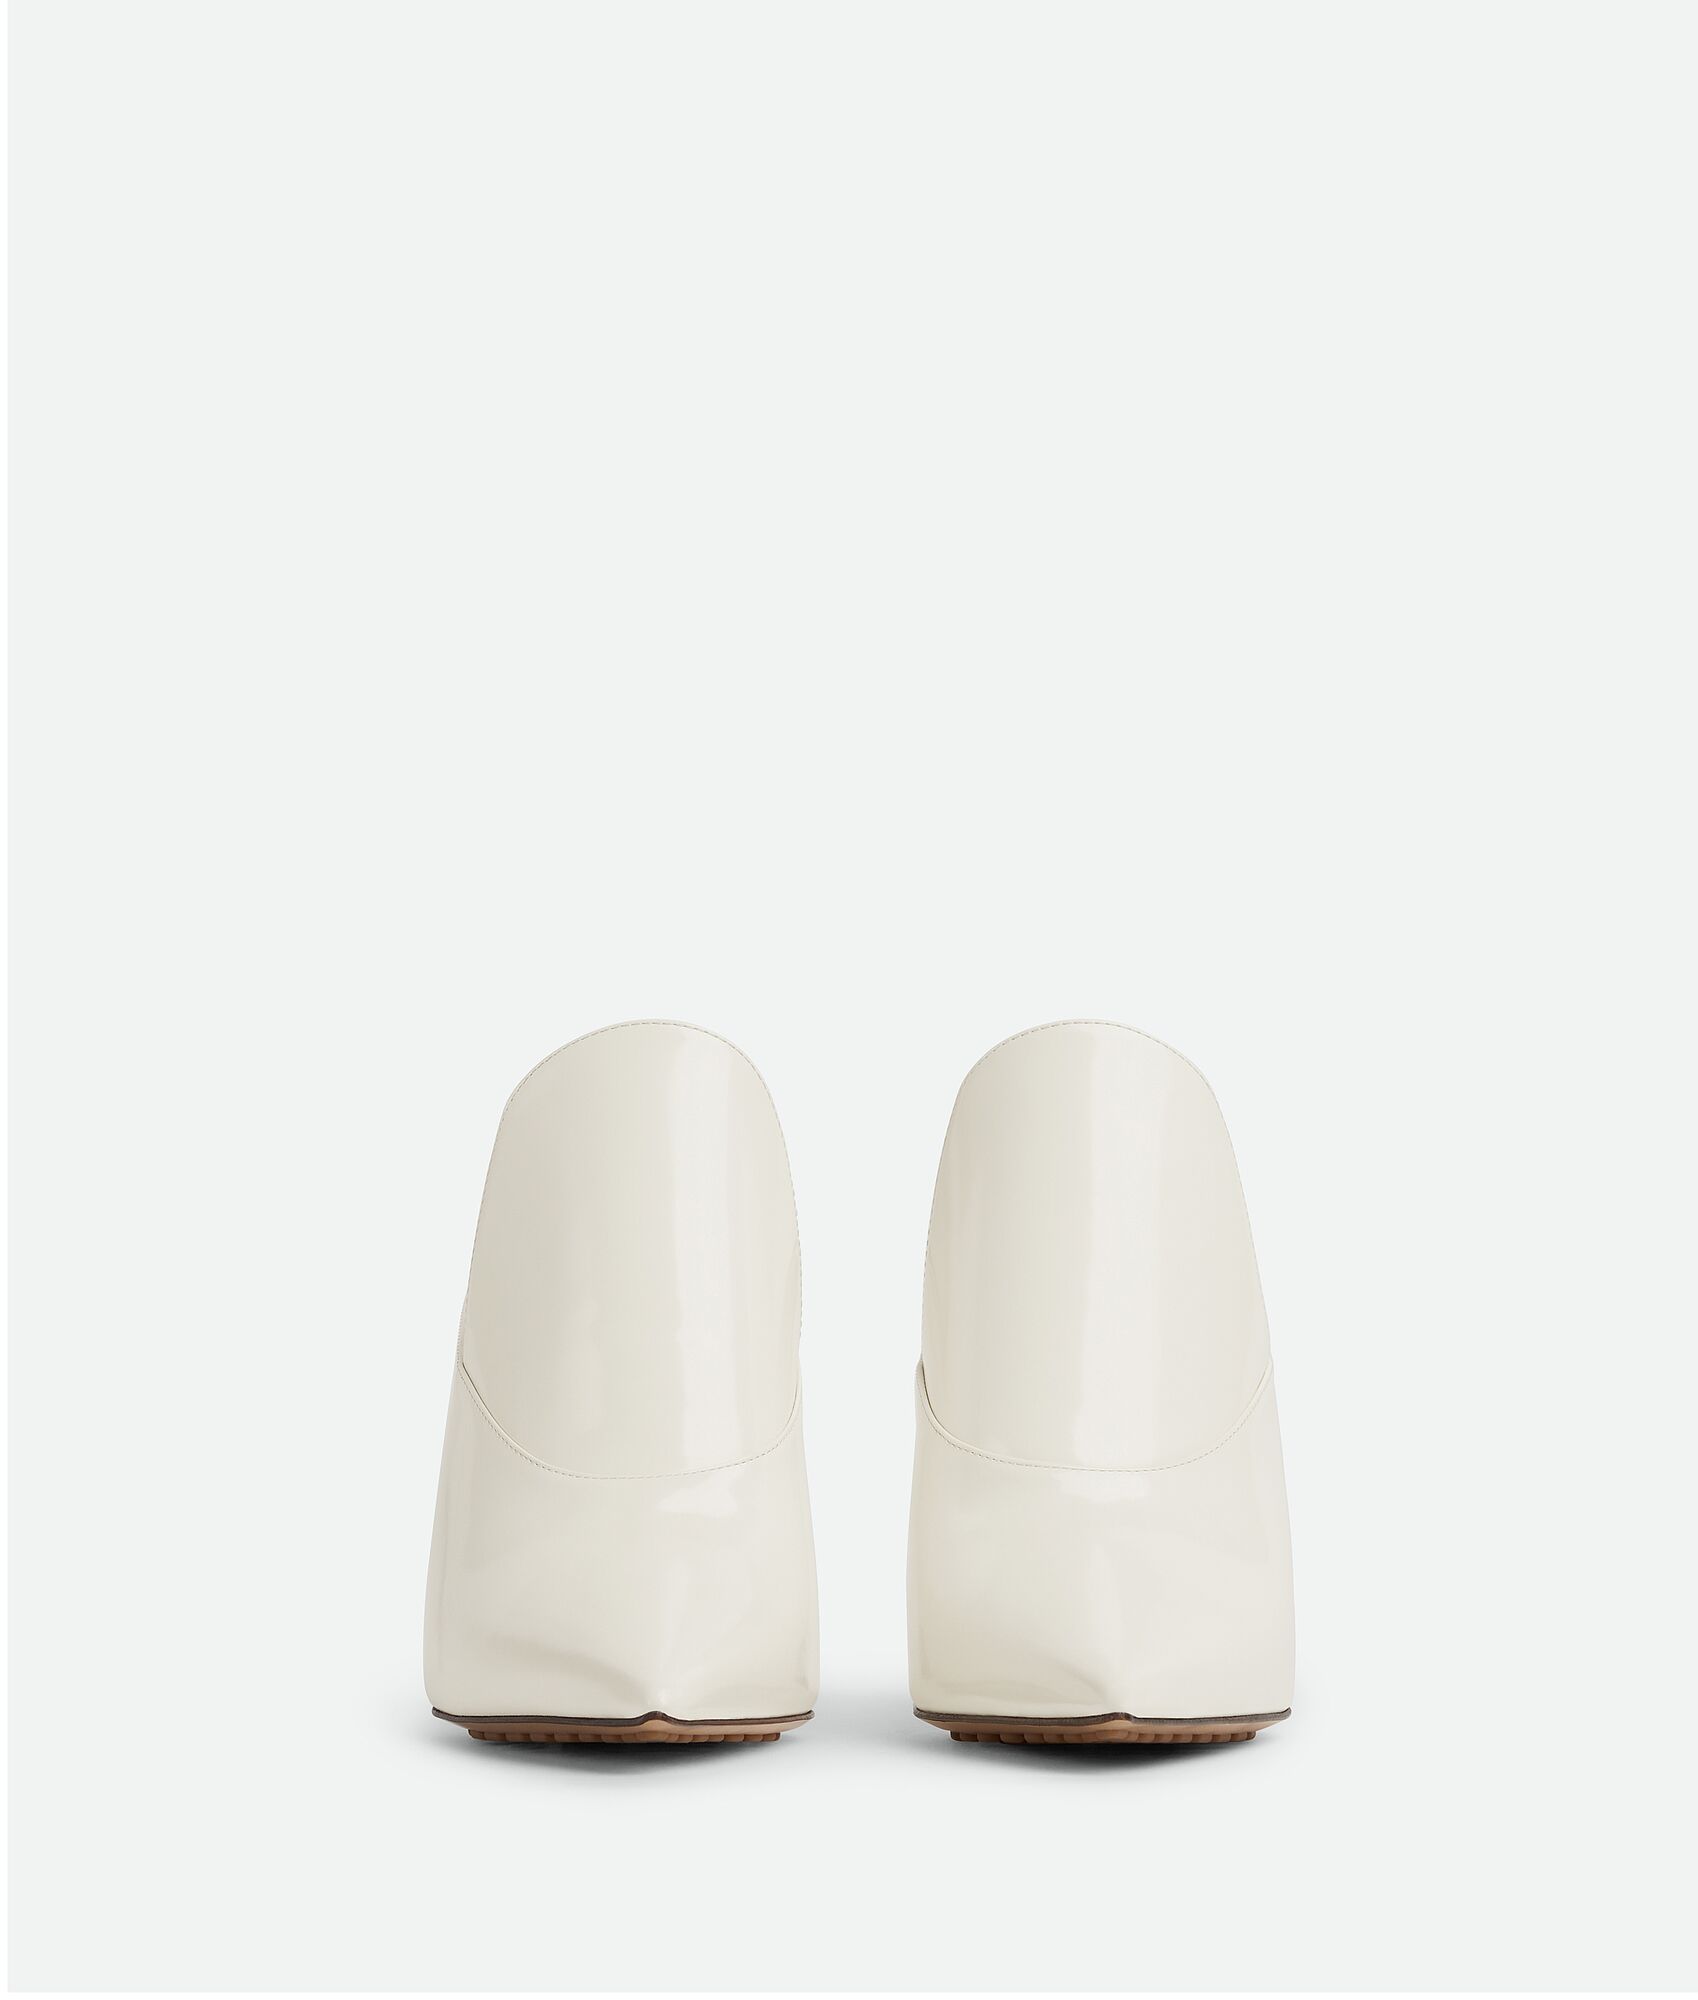 Bottega Veneta® Women's Rocket Mule in White. Shop online now.